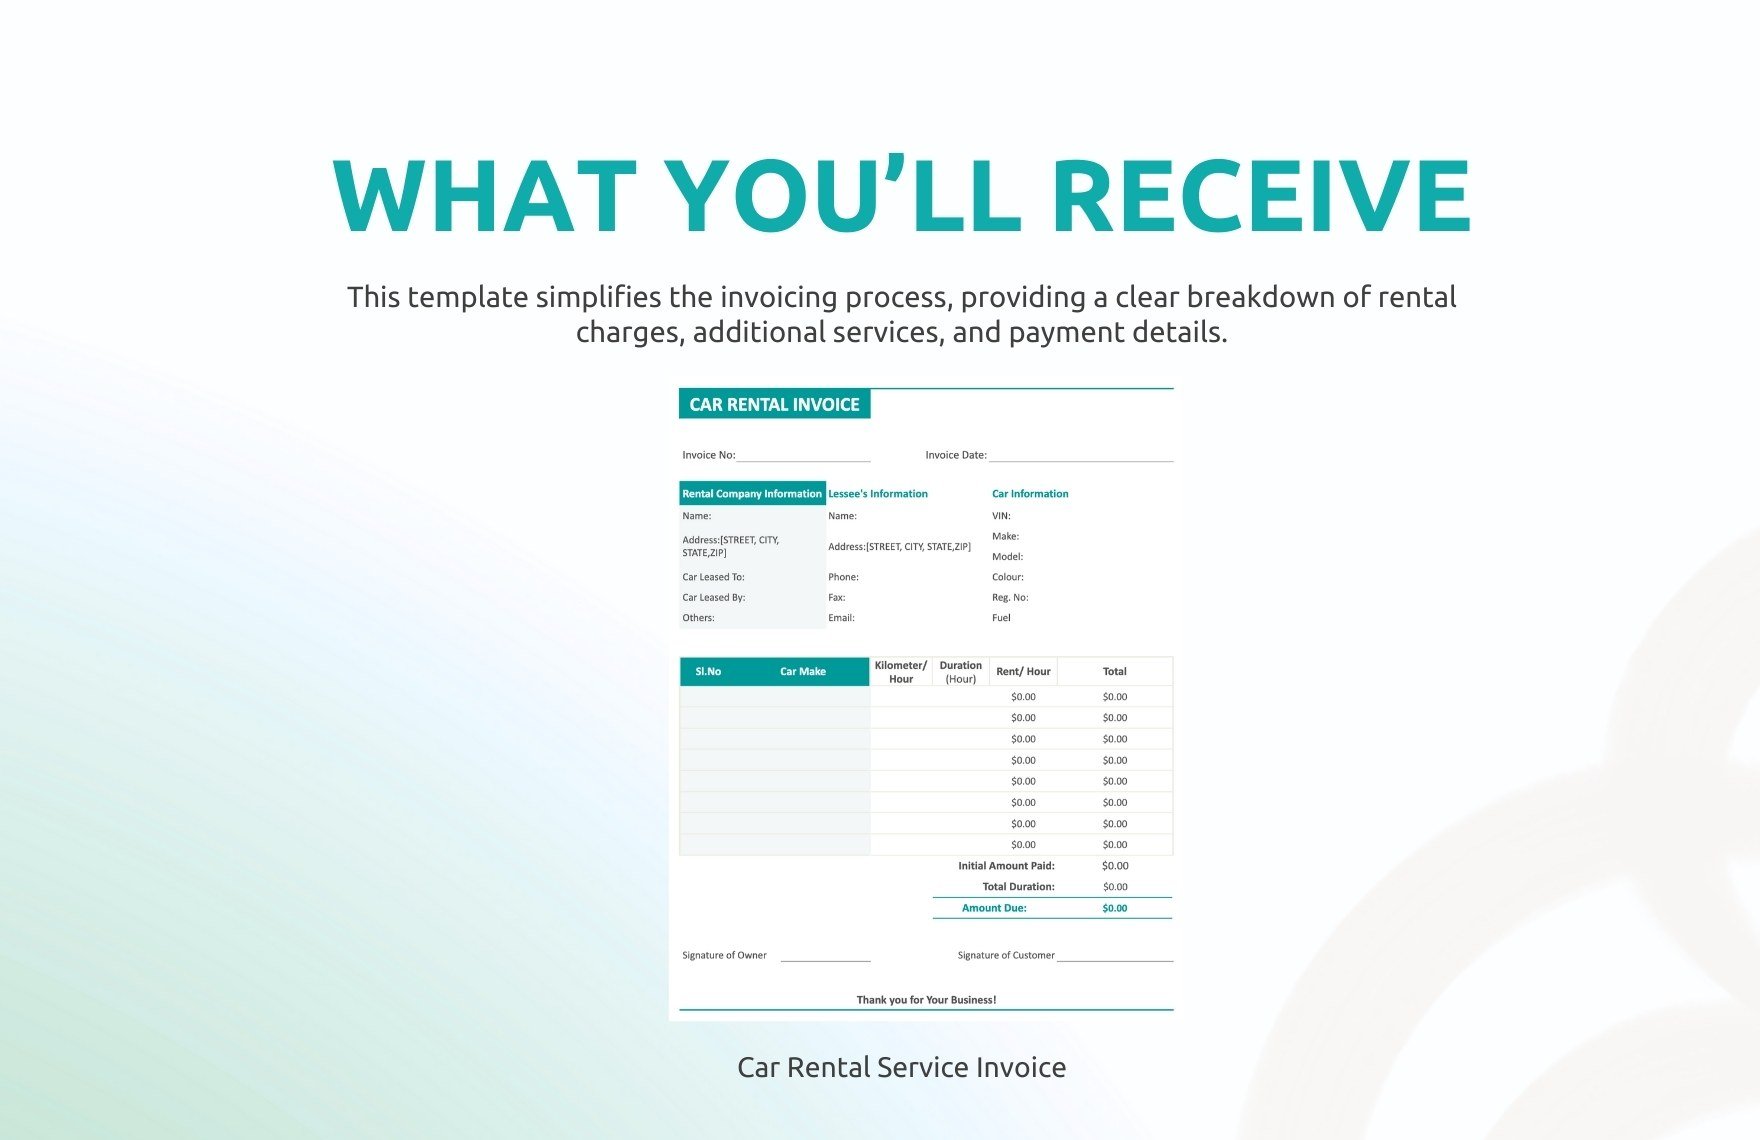 Car Rental Service Invoice Template